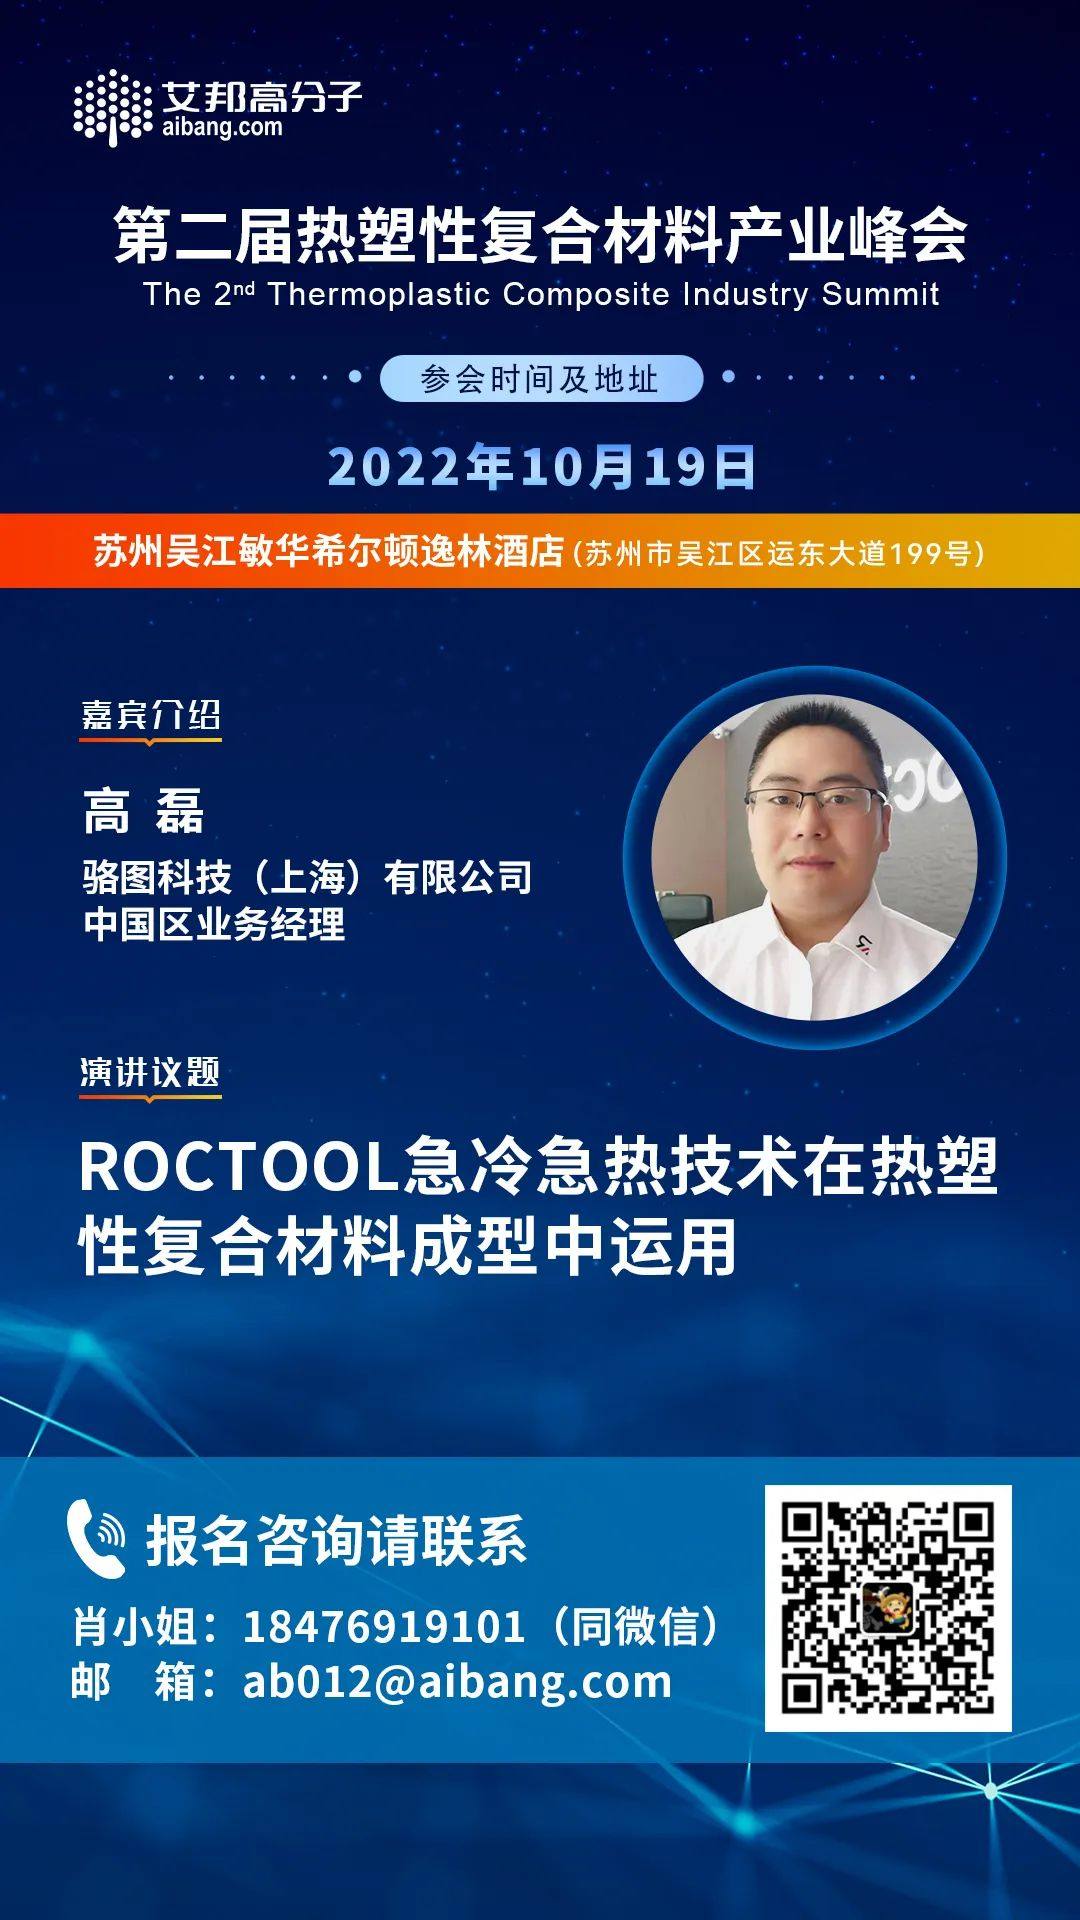 上海骆图将出席第二届热塑性复合材料产业峰会并做主题演讲